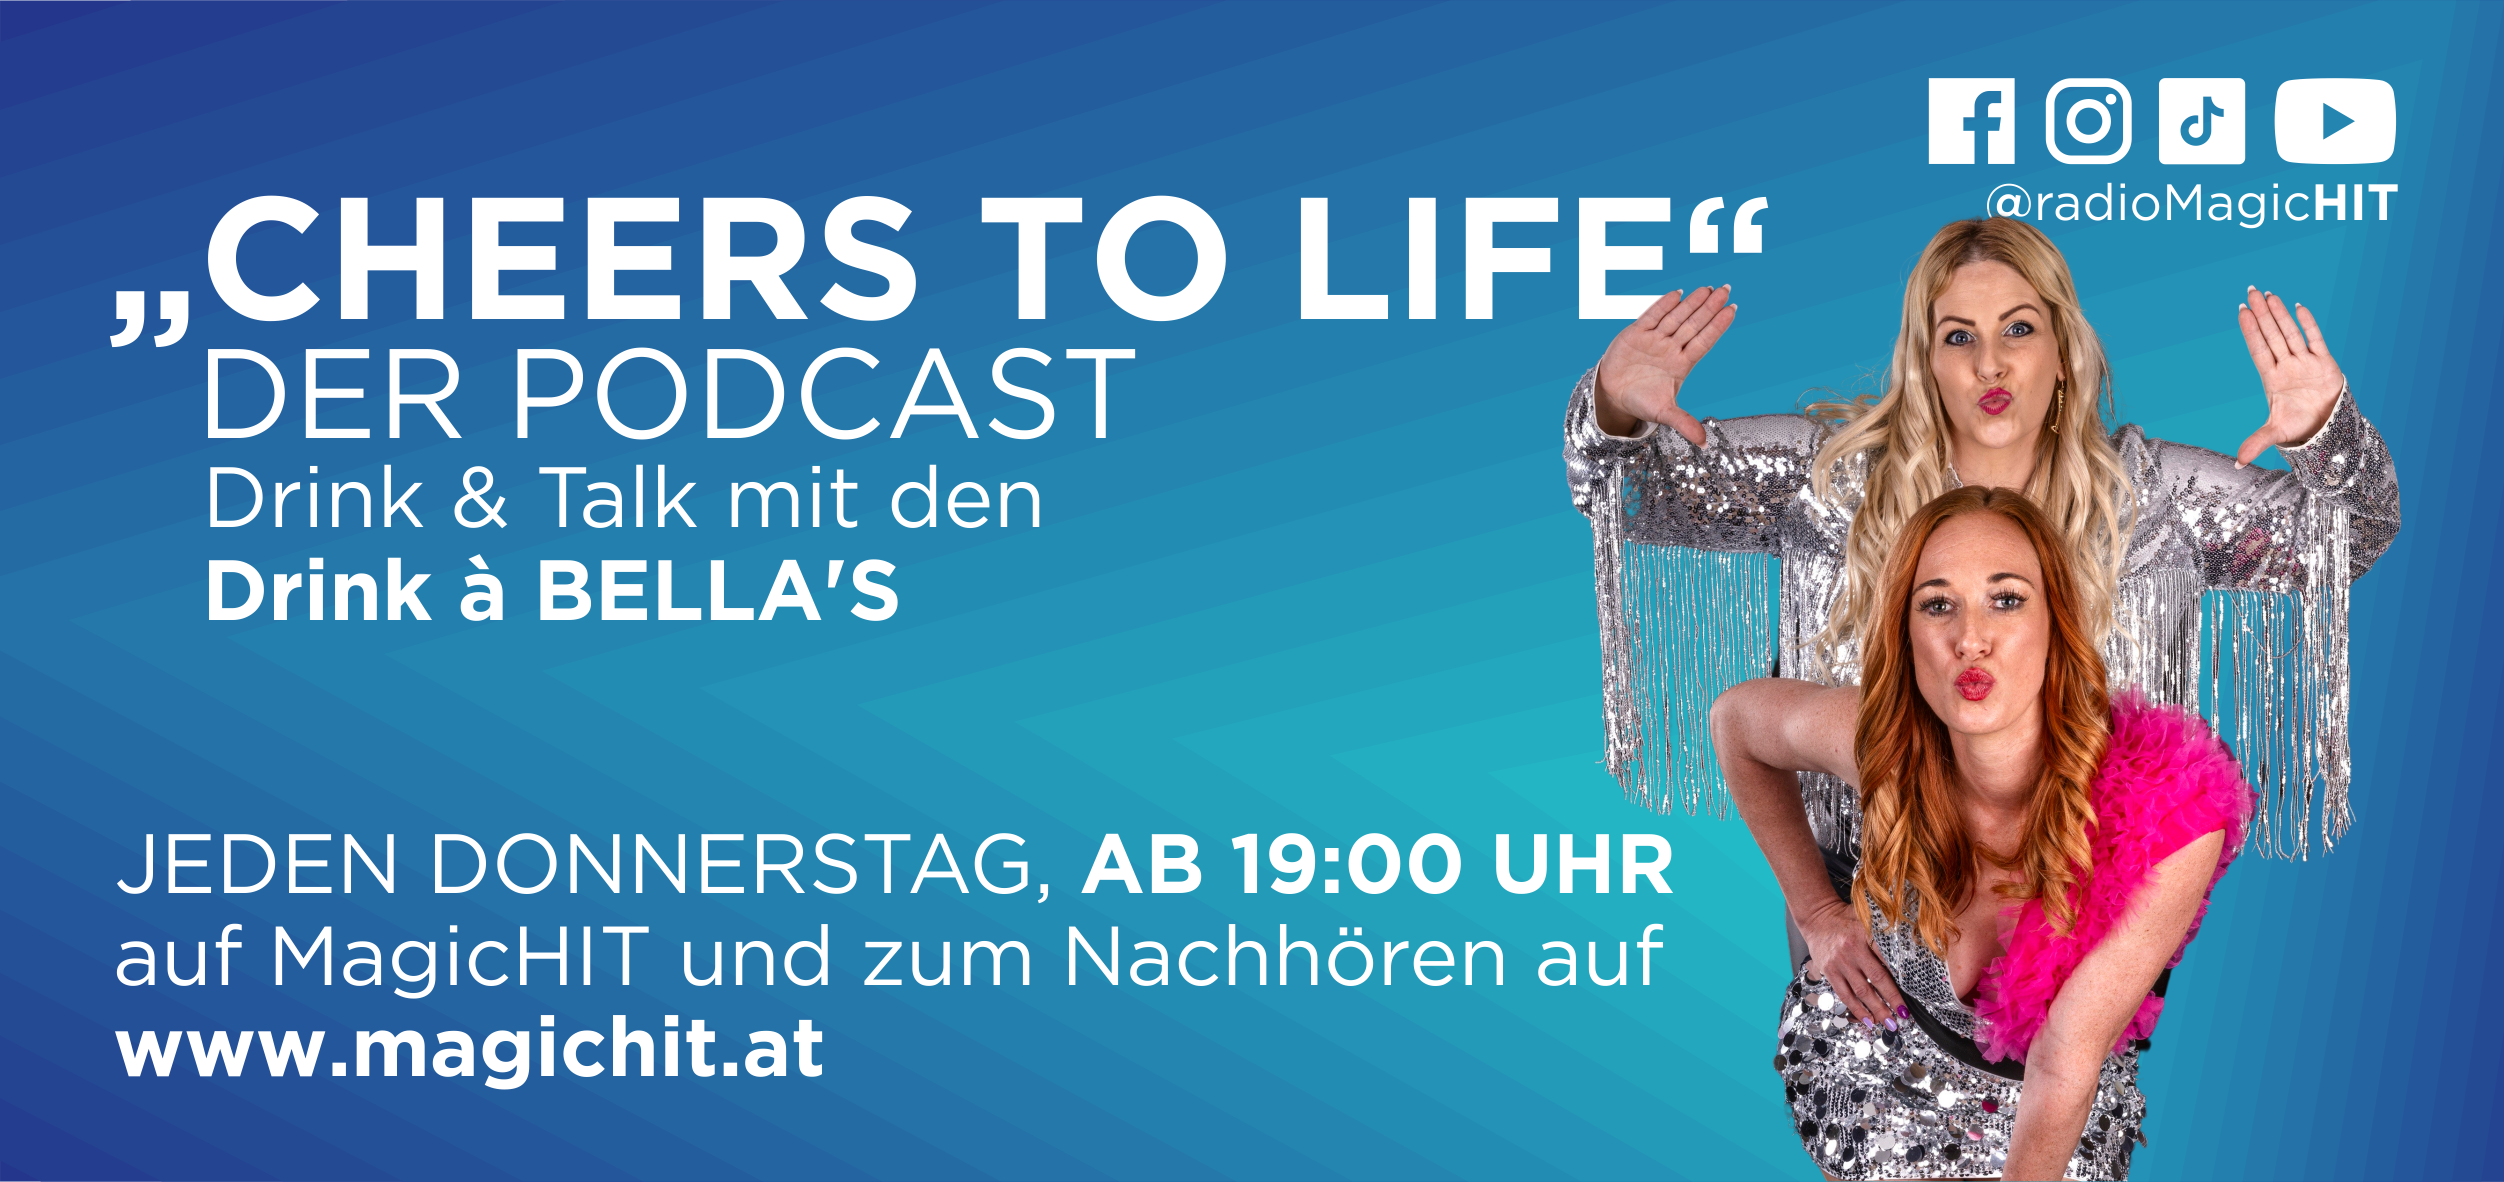 Podchast Österreich, Podcast auf Deutsch, Podcast Frauen, Cheers to Liufe, Magichit, Magiccastle, Seefeld in tirol, Tirol, Innsbruck